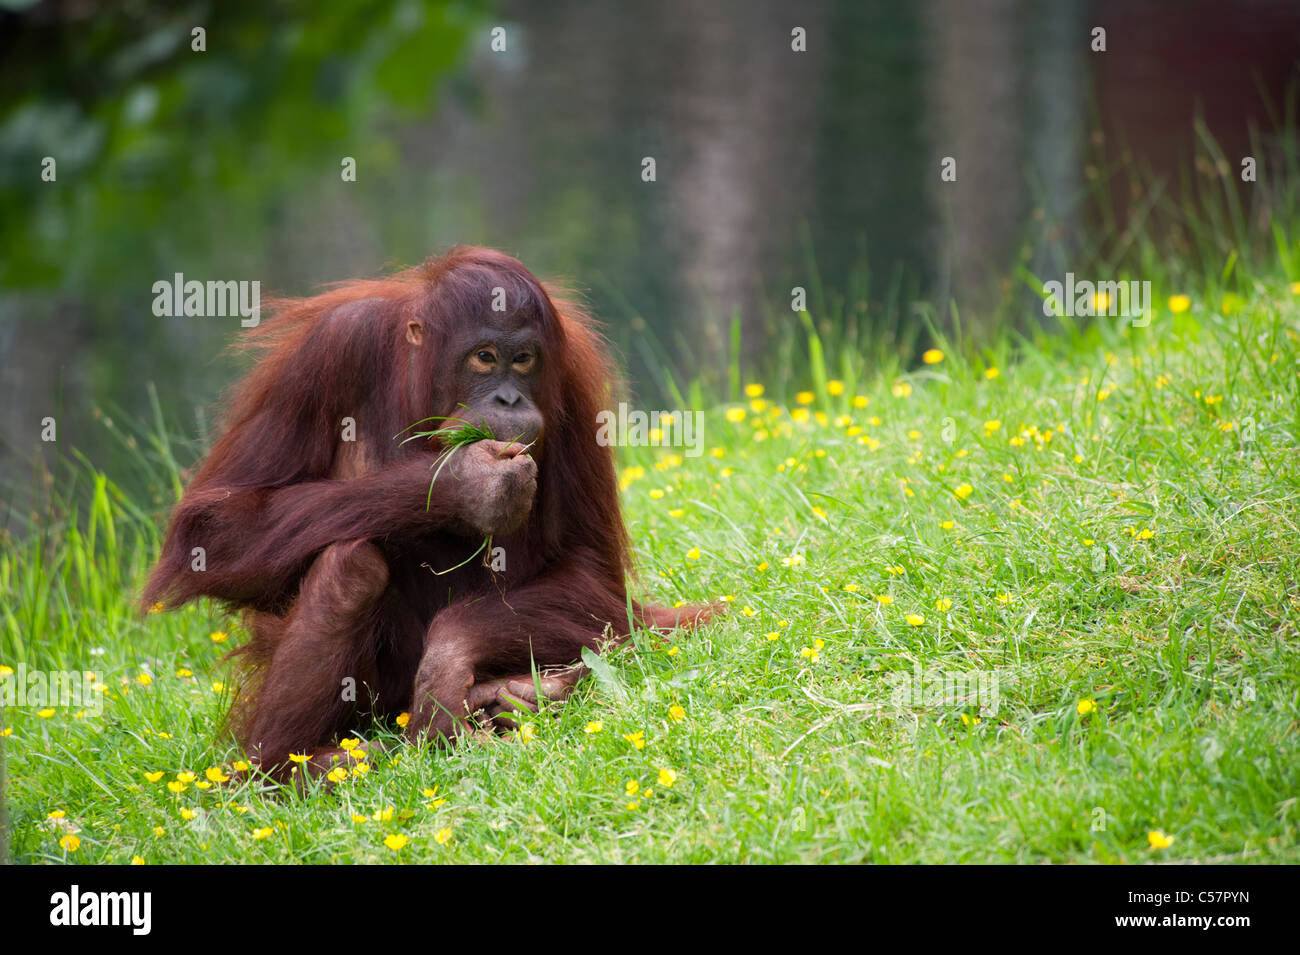 Carino orangutan sull'erba Foto Stock